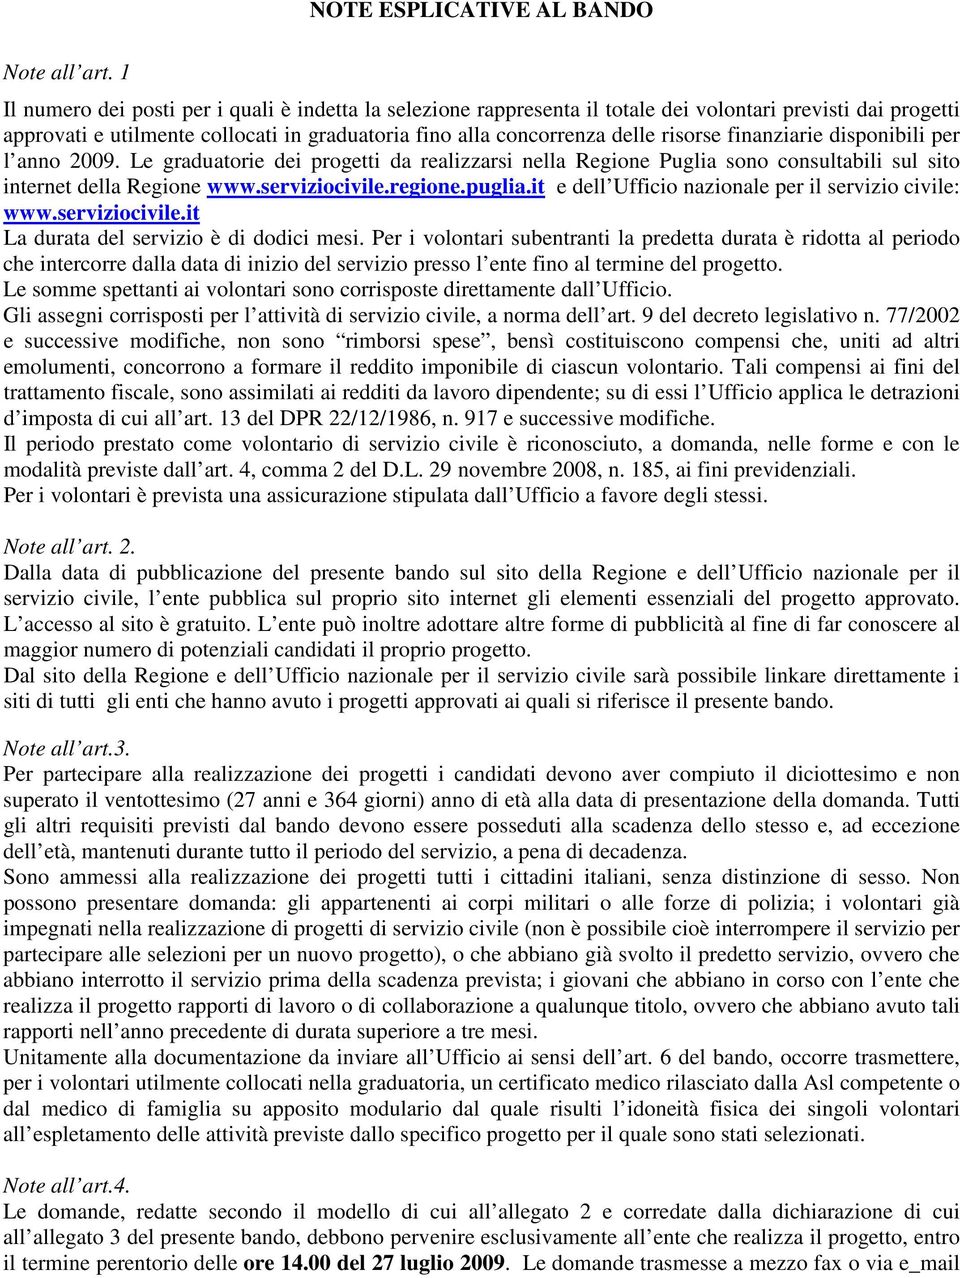 finanziarie disponibili per l anno 2009. Le graduatorie dei progetti da realizzarsi nella Regione Puglia sono consultabili sul sito internet della Regione www.serviziocivile.regione.puglia.